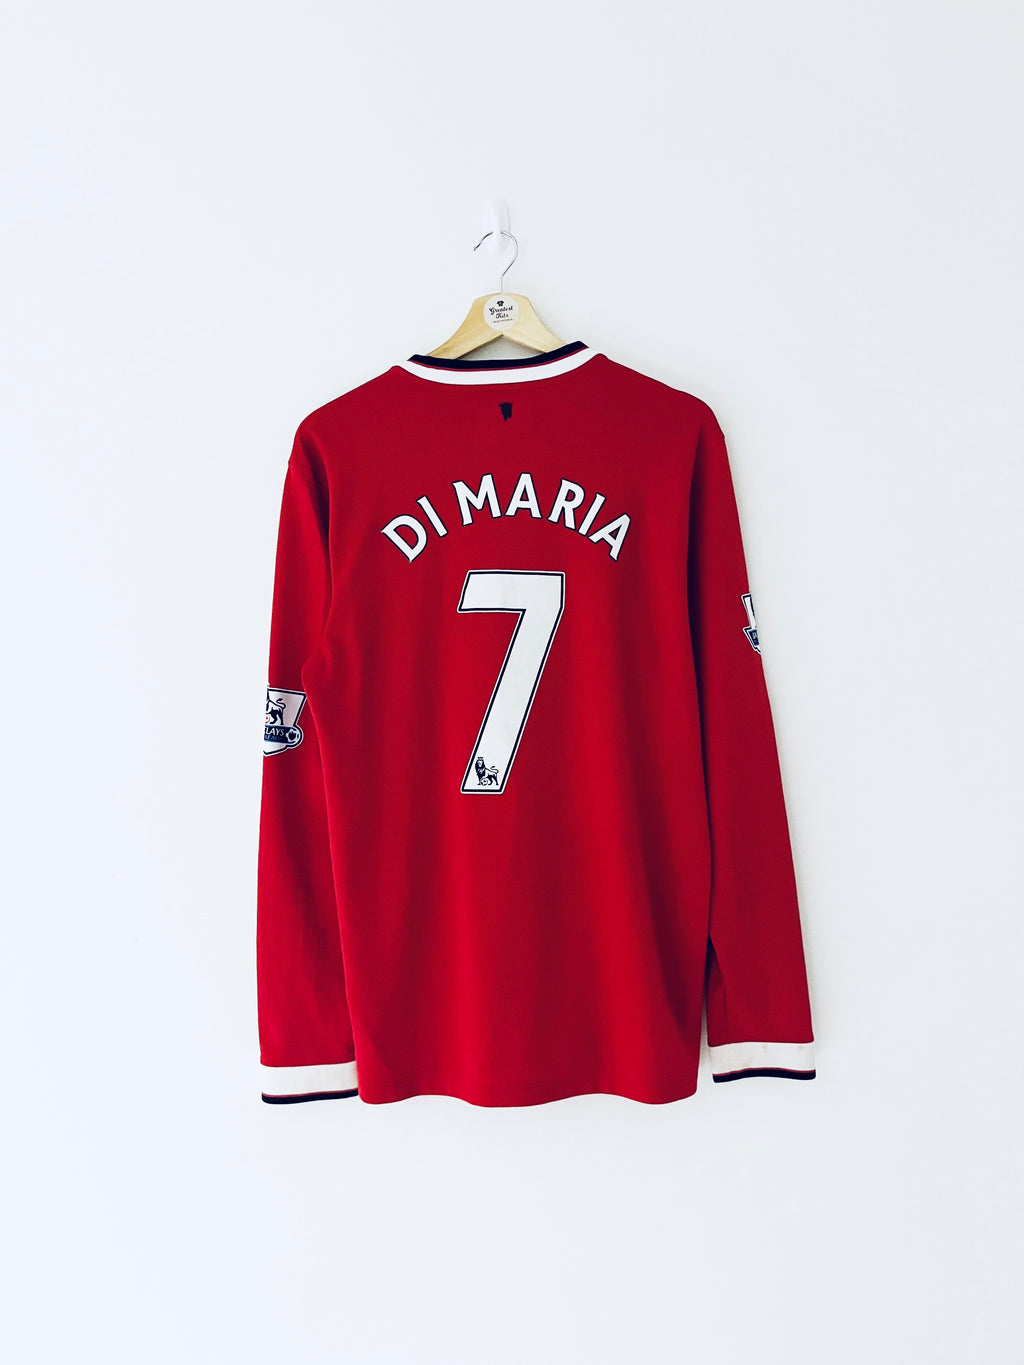 2014/15 Camiseta local del Manchester United L/S Di María #7 (M) 9/10 